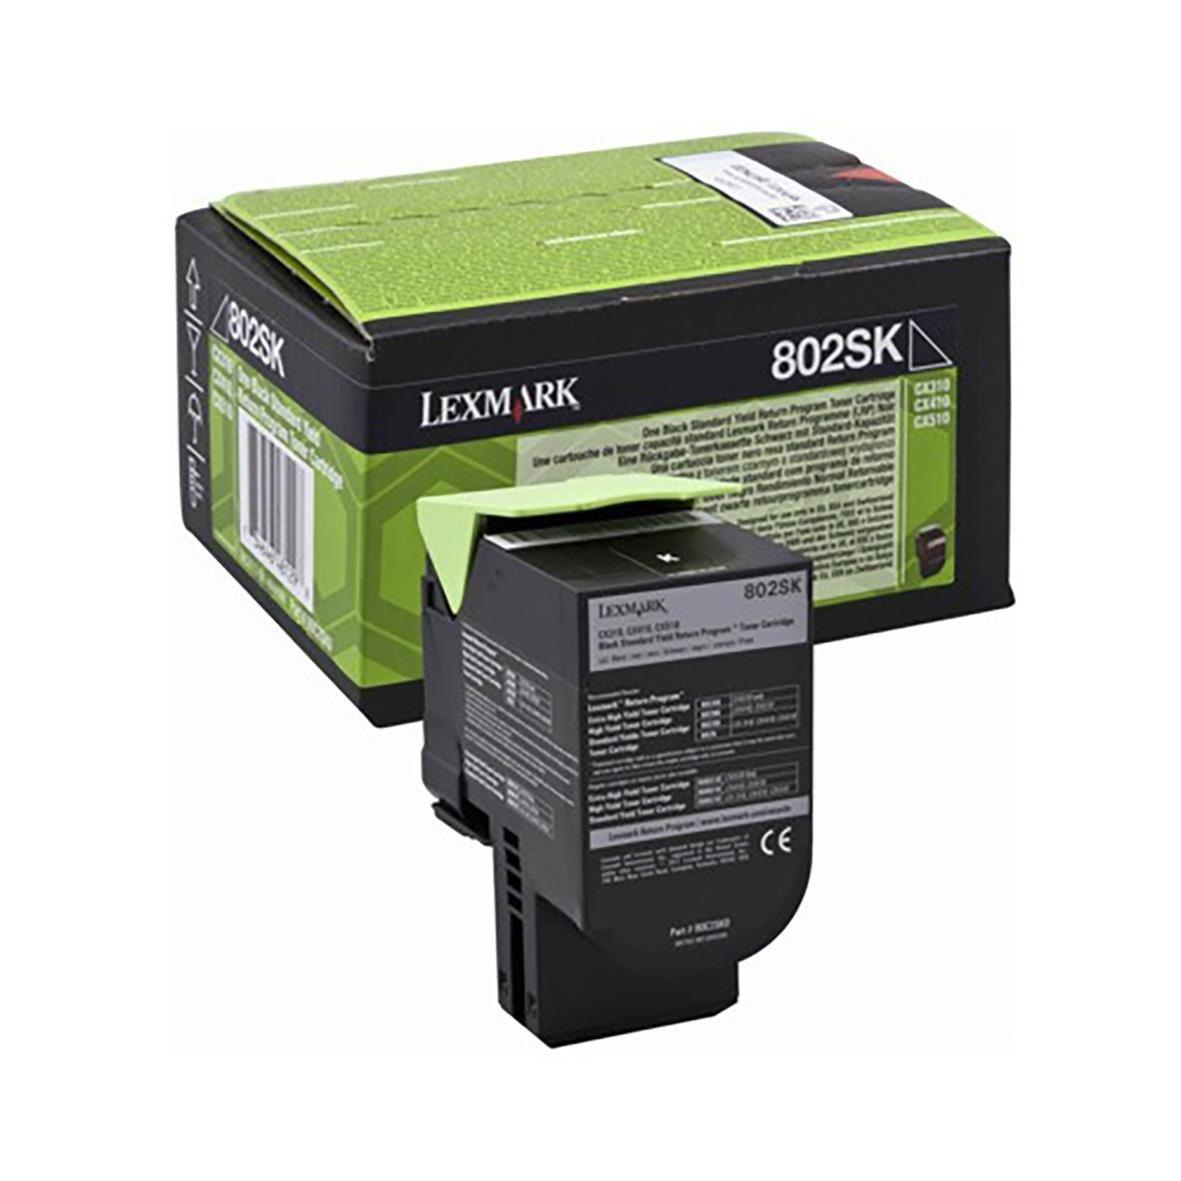 Lasertoner Lexmark 802SK 2500 Sidor 80C2SK0 Svart 27042081